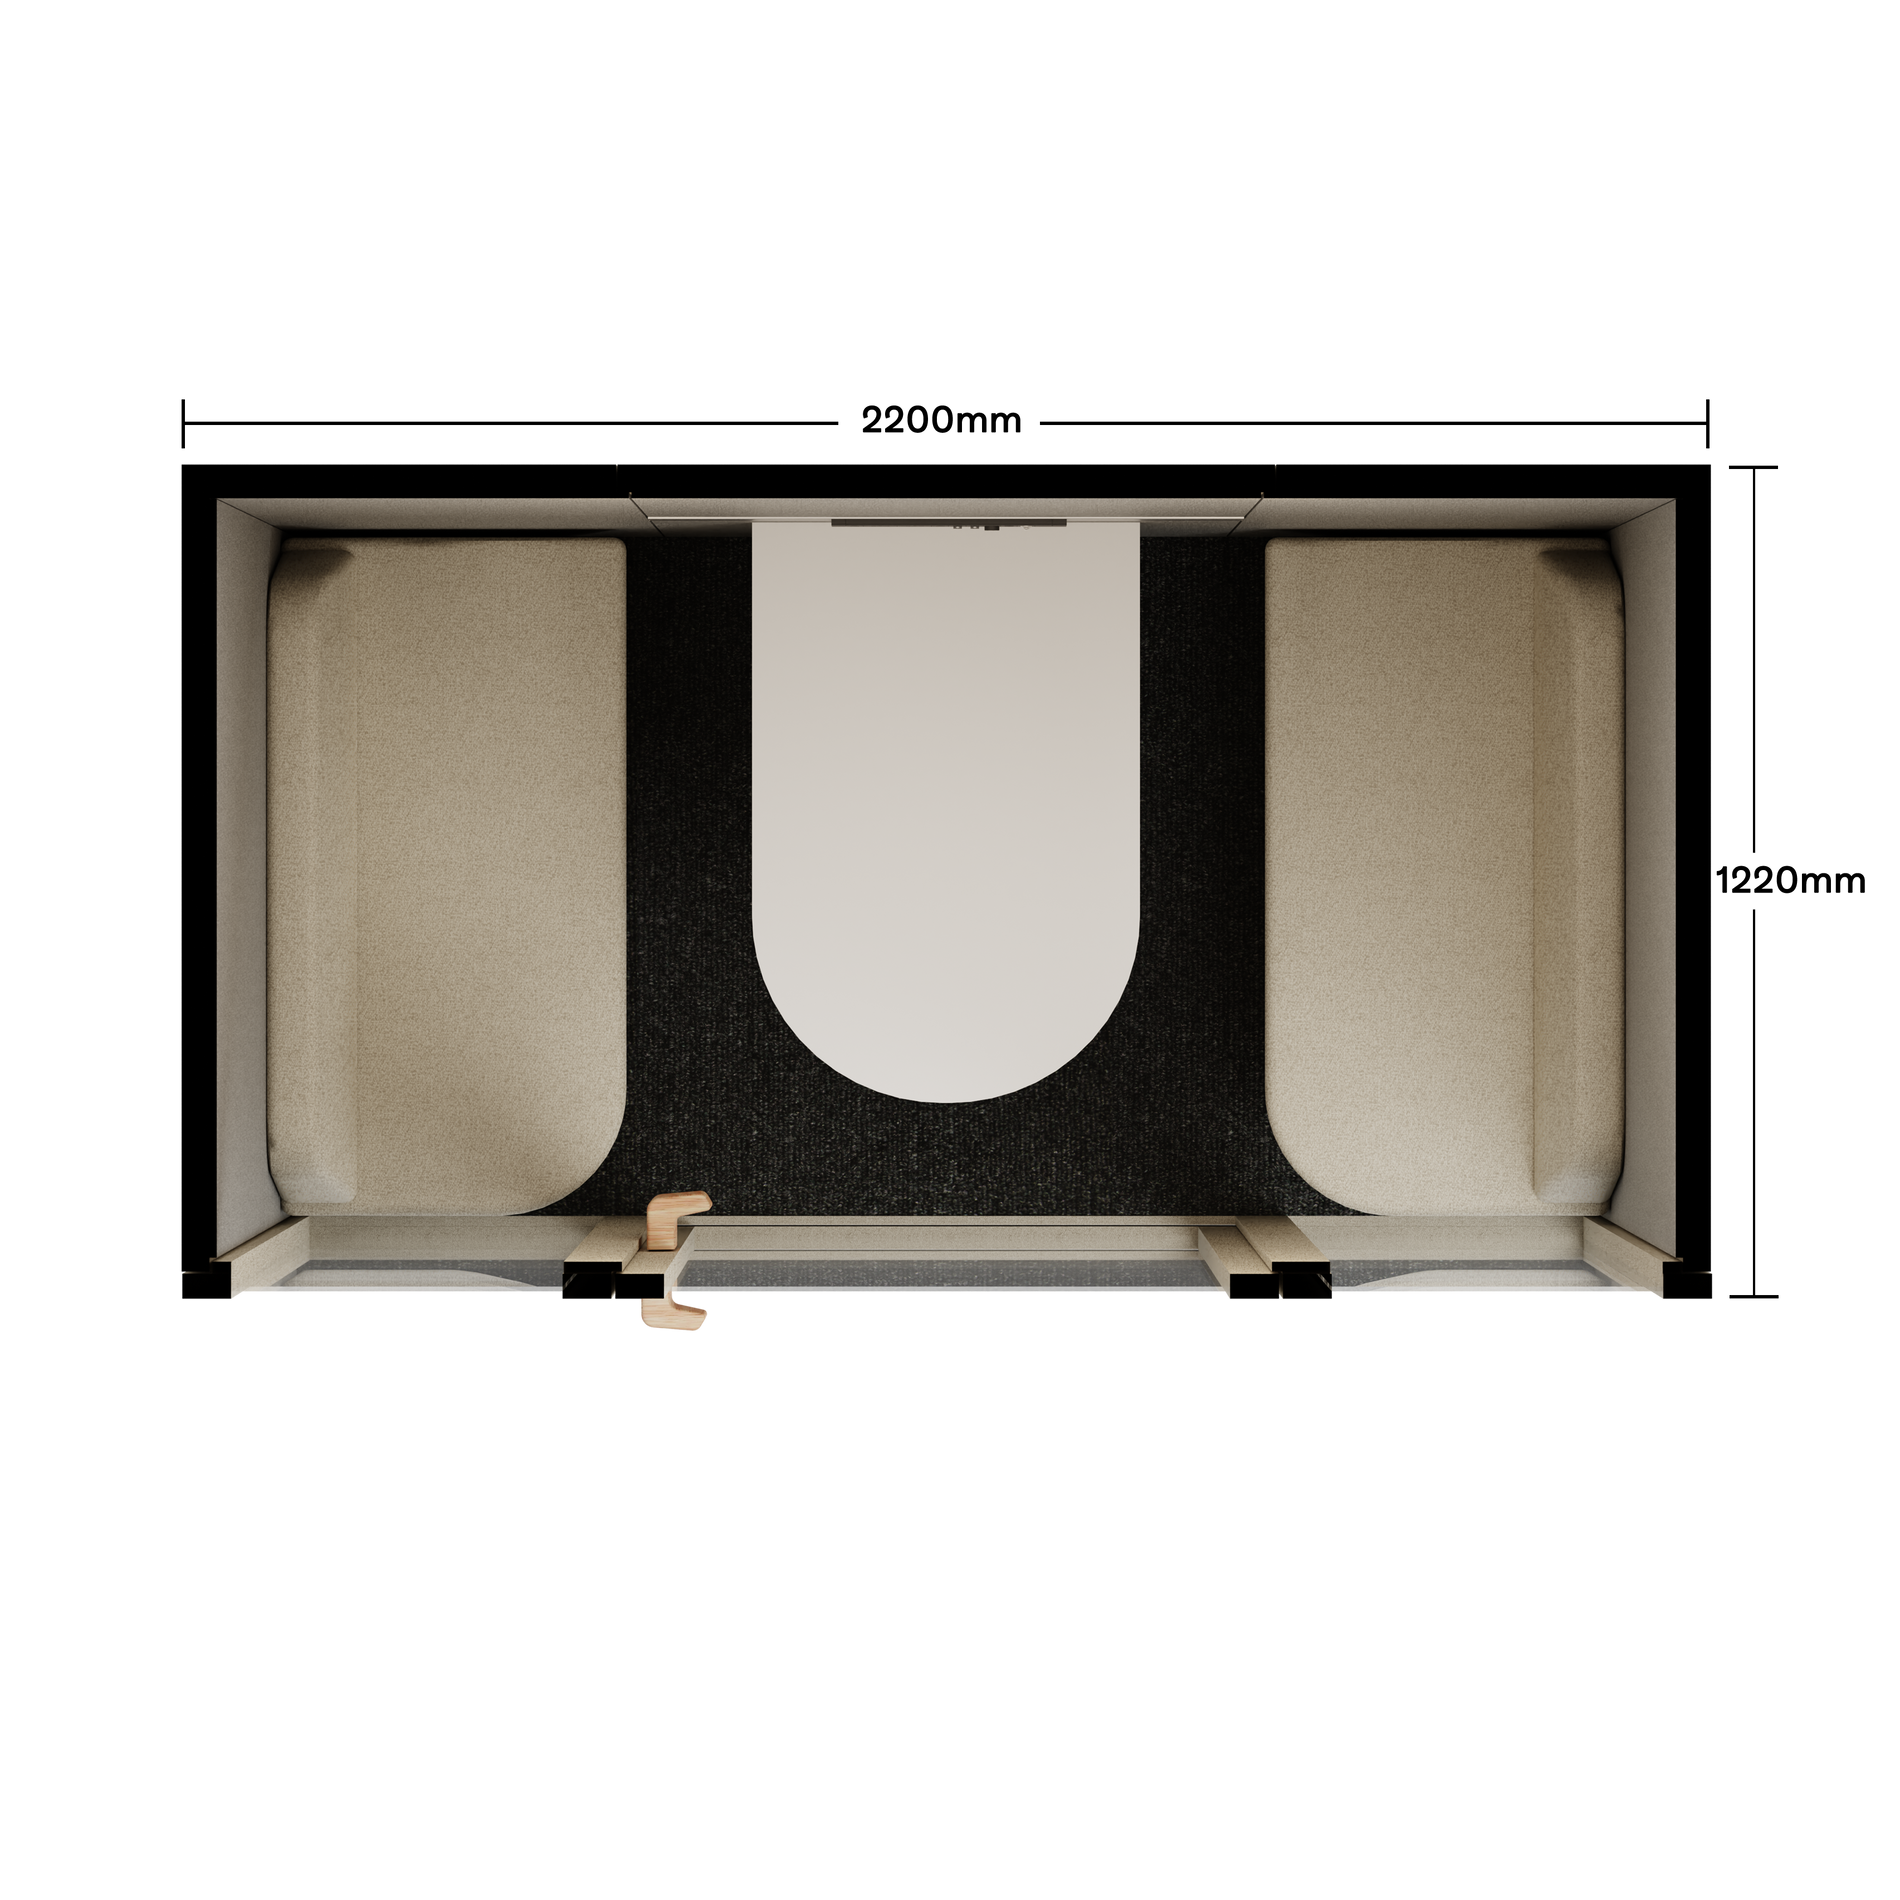 Folio Caseta de Oficina para 2-4 PersonasFolio Beige / Furniture As Per Images